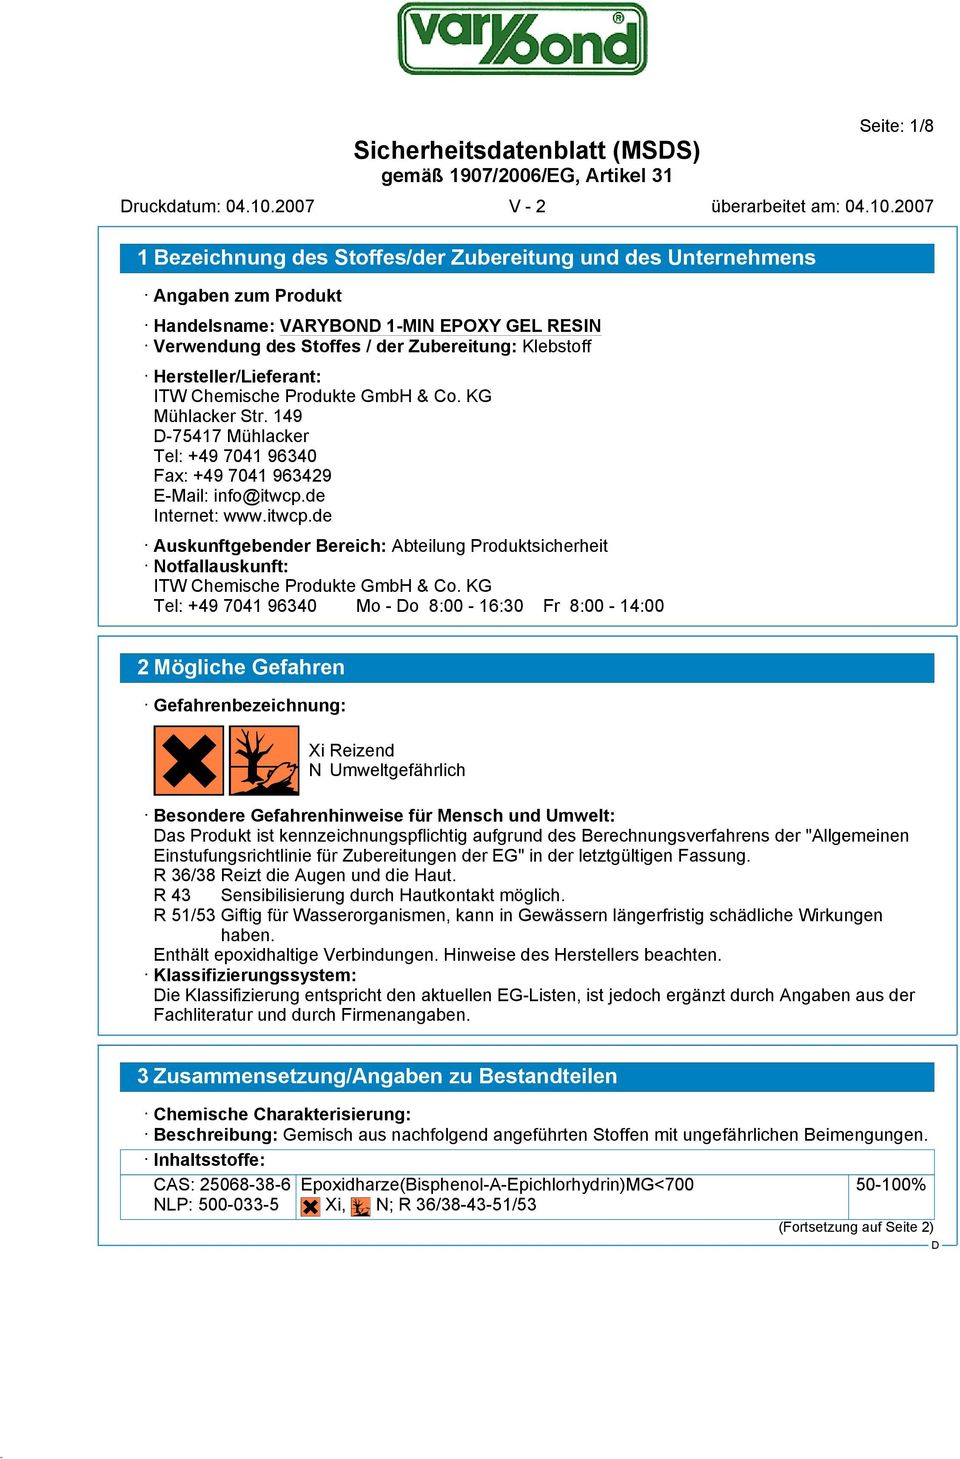 de Internet: www.itwcp.de Auskunftgebender Bereich: Abteilung Produktsicherheit Notfallauskunft: ITW Chemische Produkte GmbH & Co.